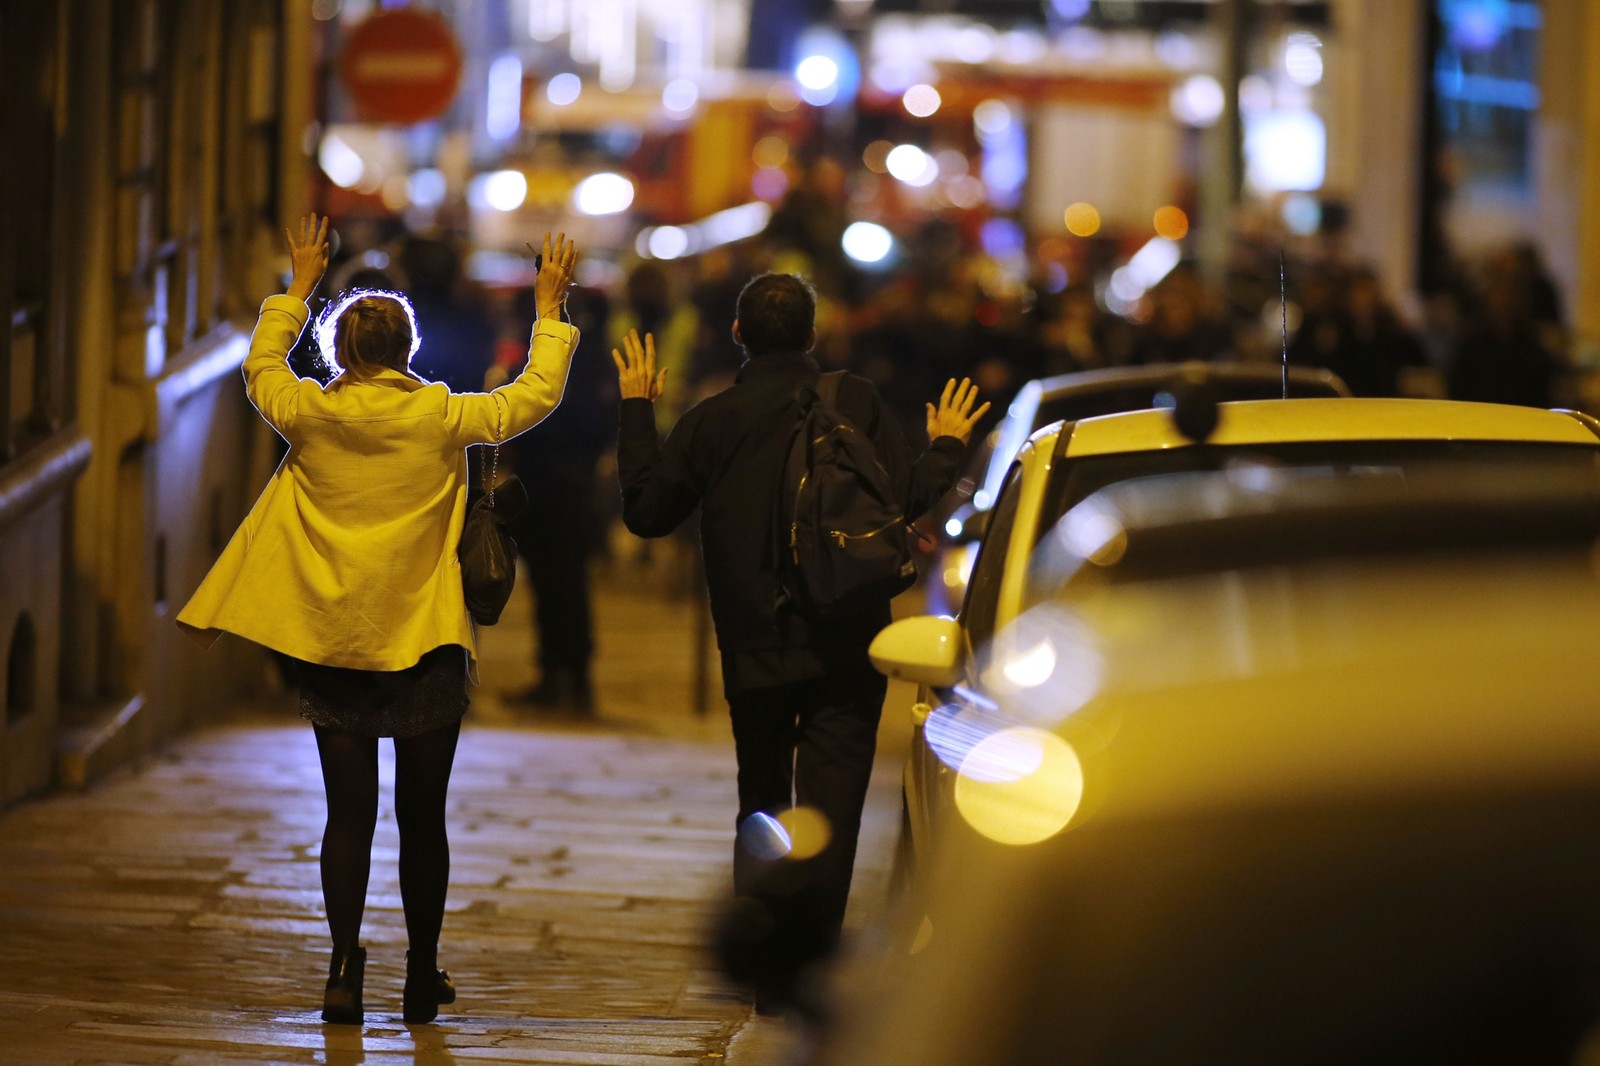 Pessoas levantam as mãos durante operação policial em rua próximas à avenida Champs Elysees, em Paris, onde houve um tiroteio na noite desta quinta-feira (20) (Foto: REUTERS/Benoit Tessier)